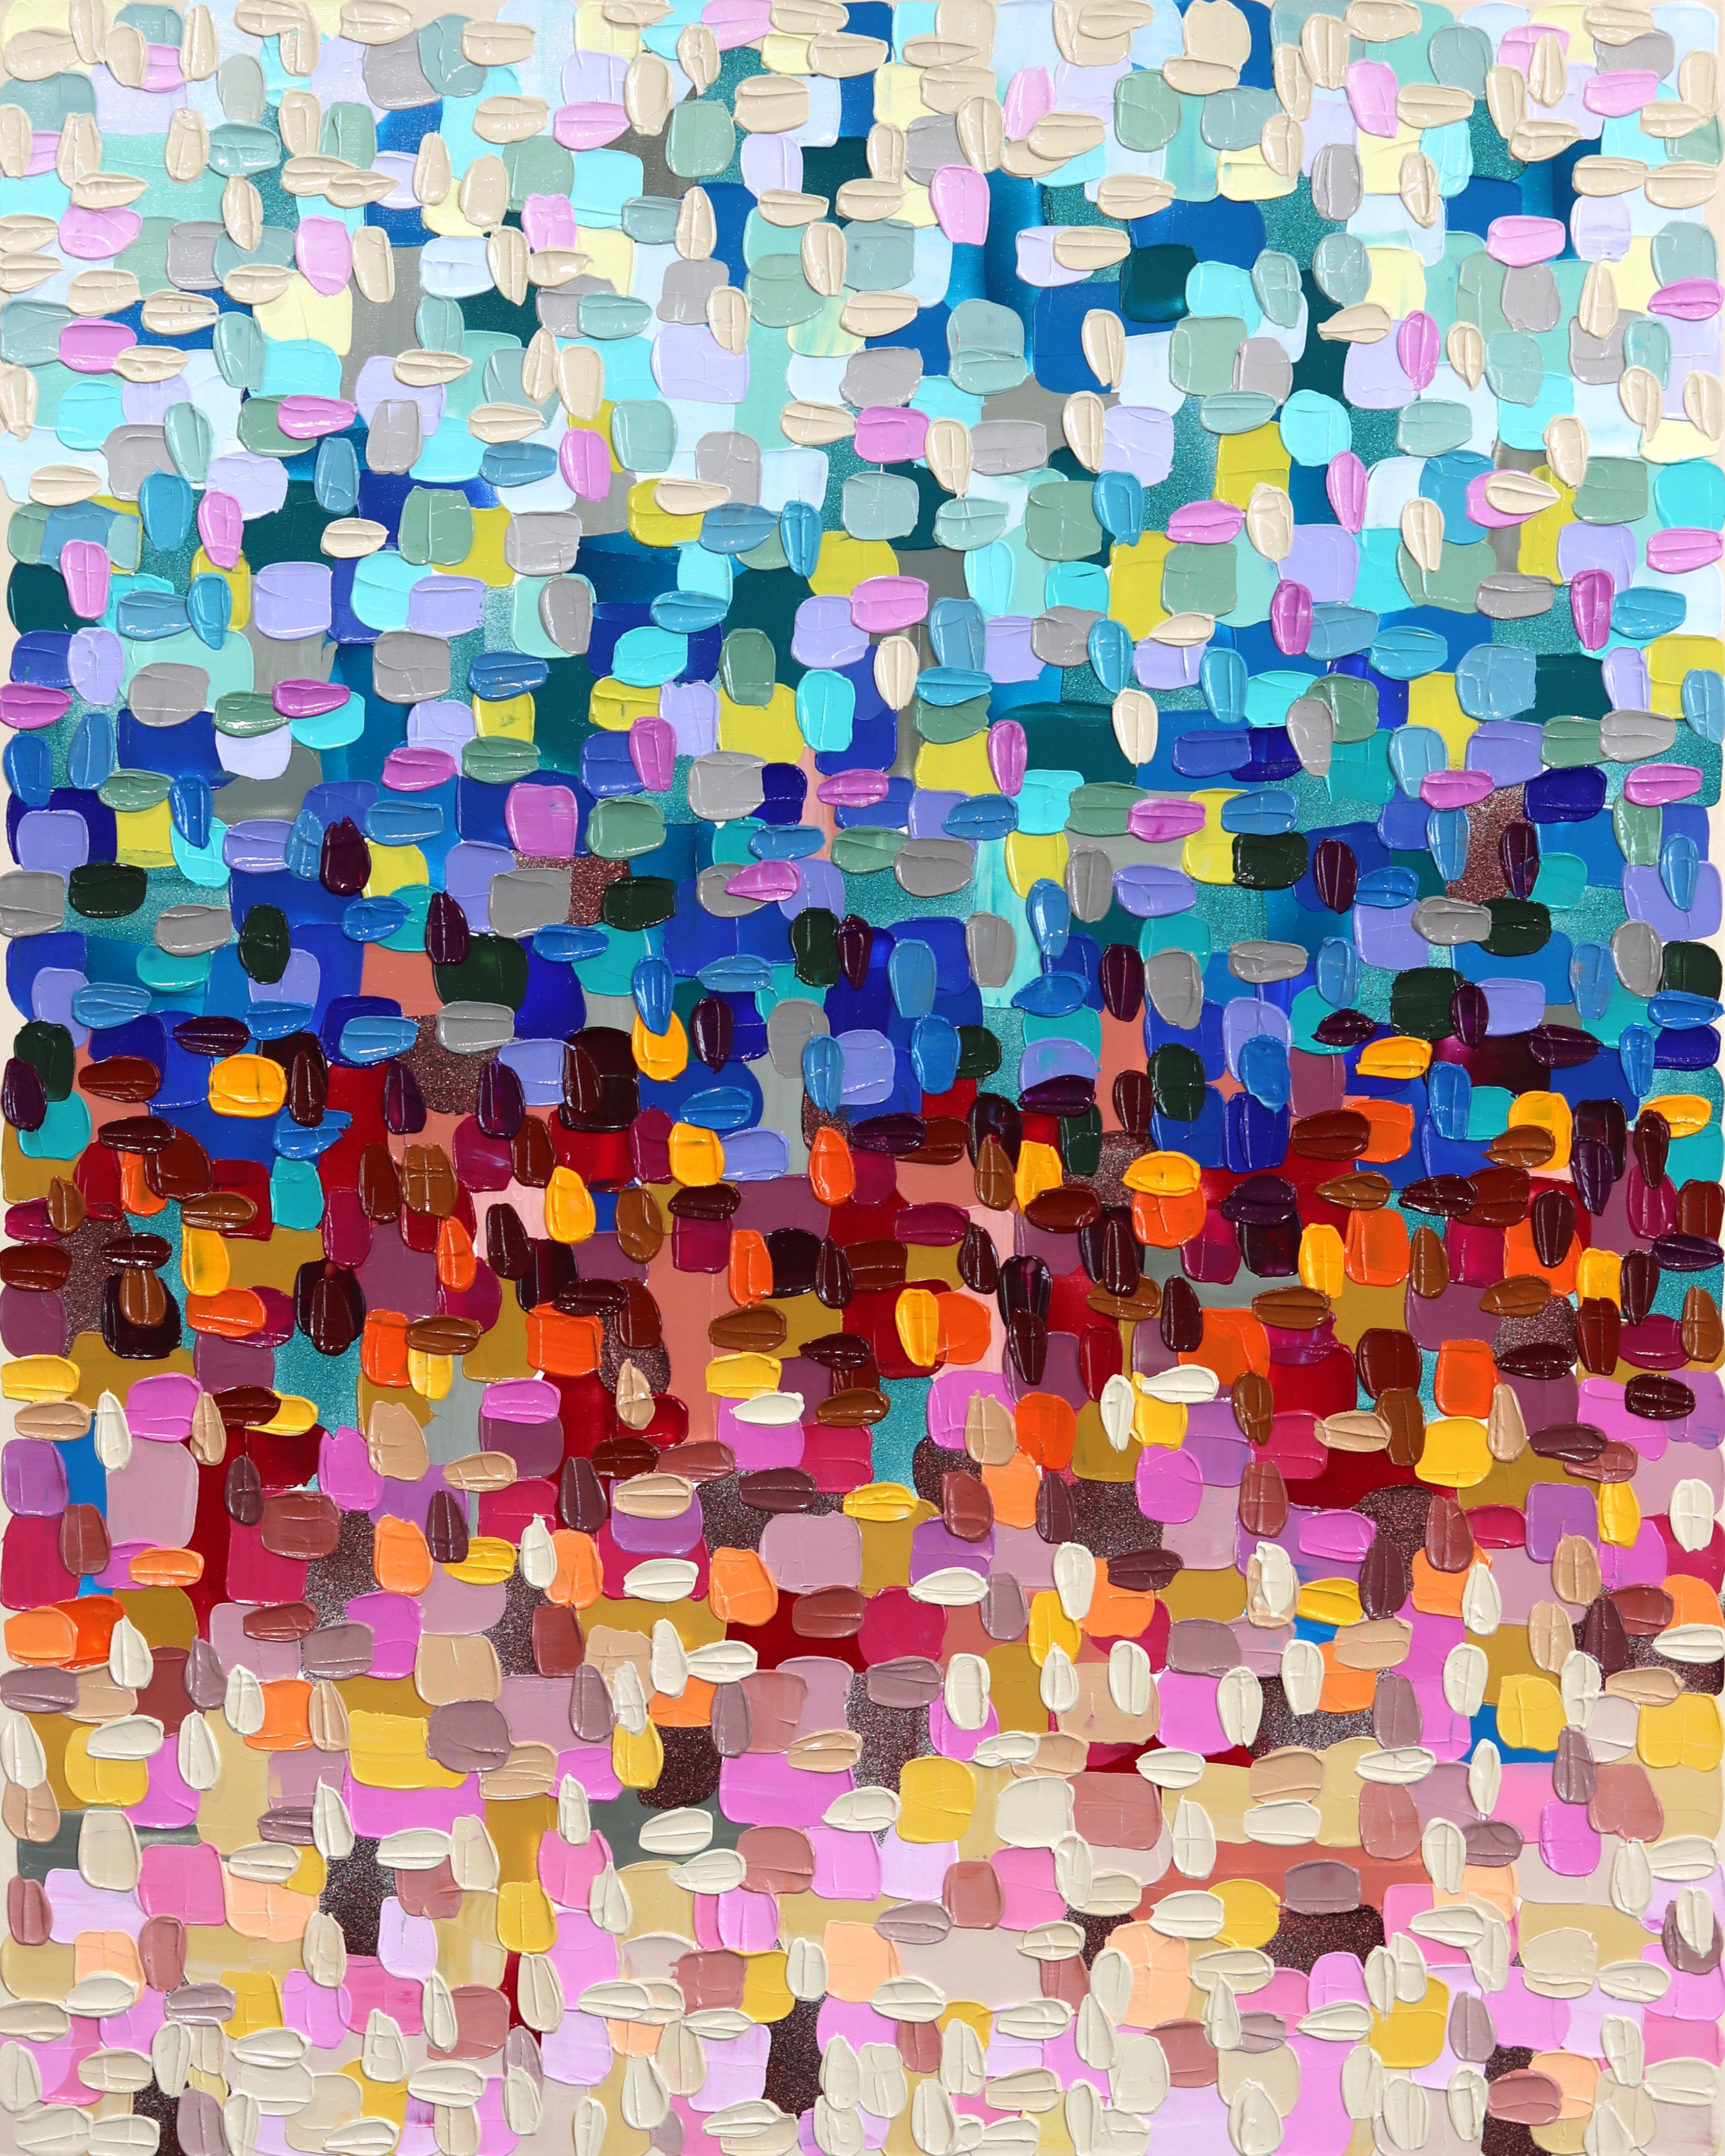 Abstract Painting Shiri Phillips - Grand centre en forme de cœur - Peinture épaisse et abstraite colorée